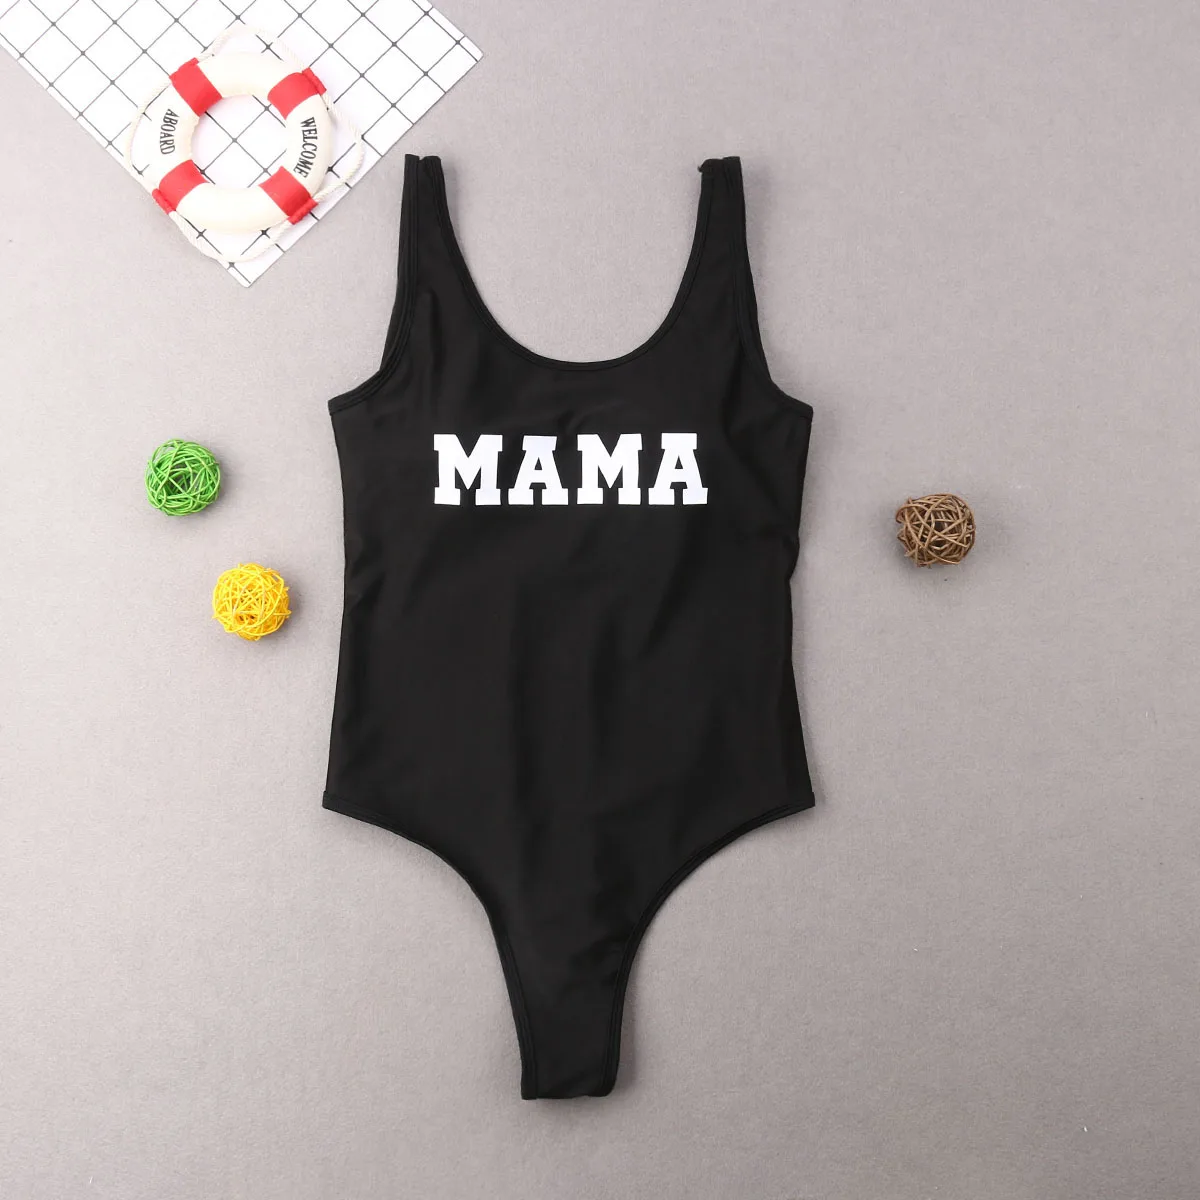 Puddcoco/семейный купальный костюм; одежда для купания для мамы, папы, девочек и мальчиков; комплекты бикини